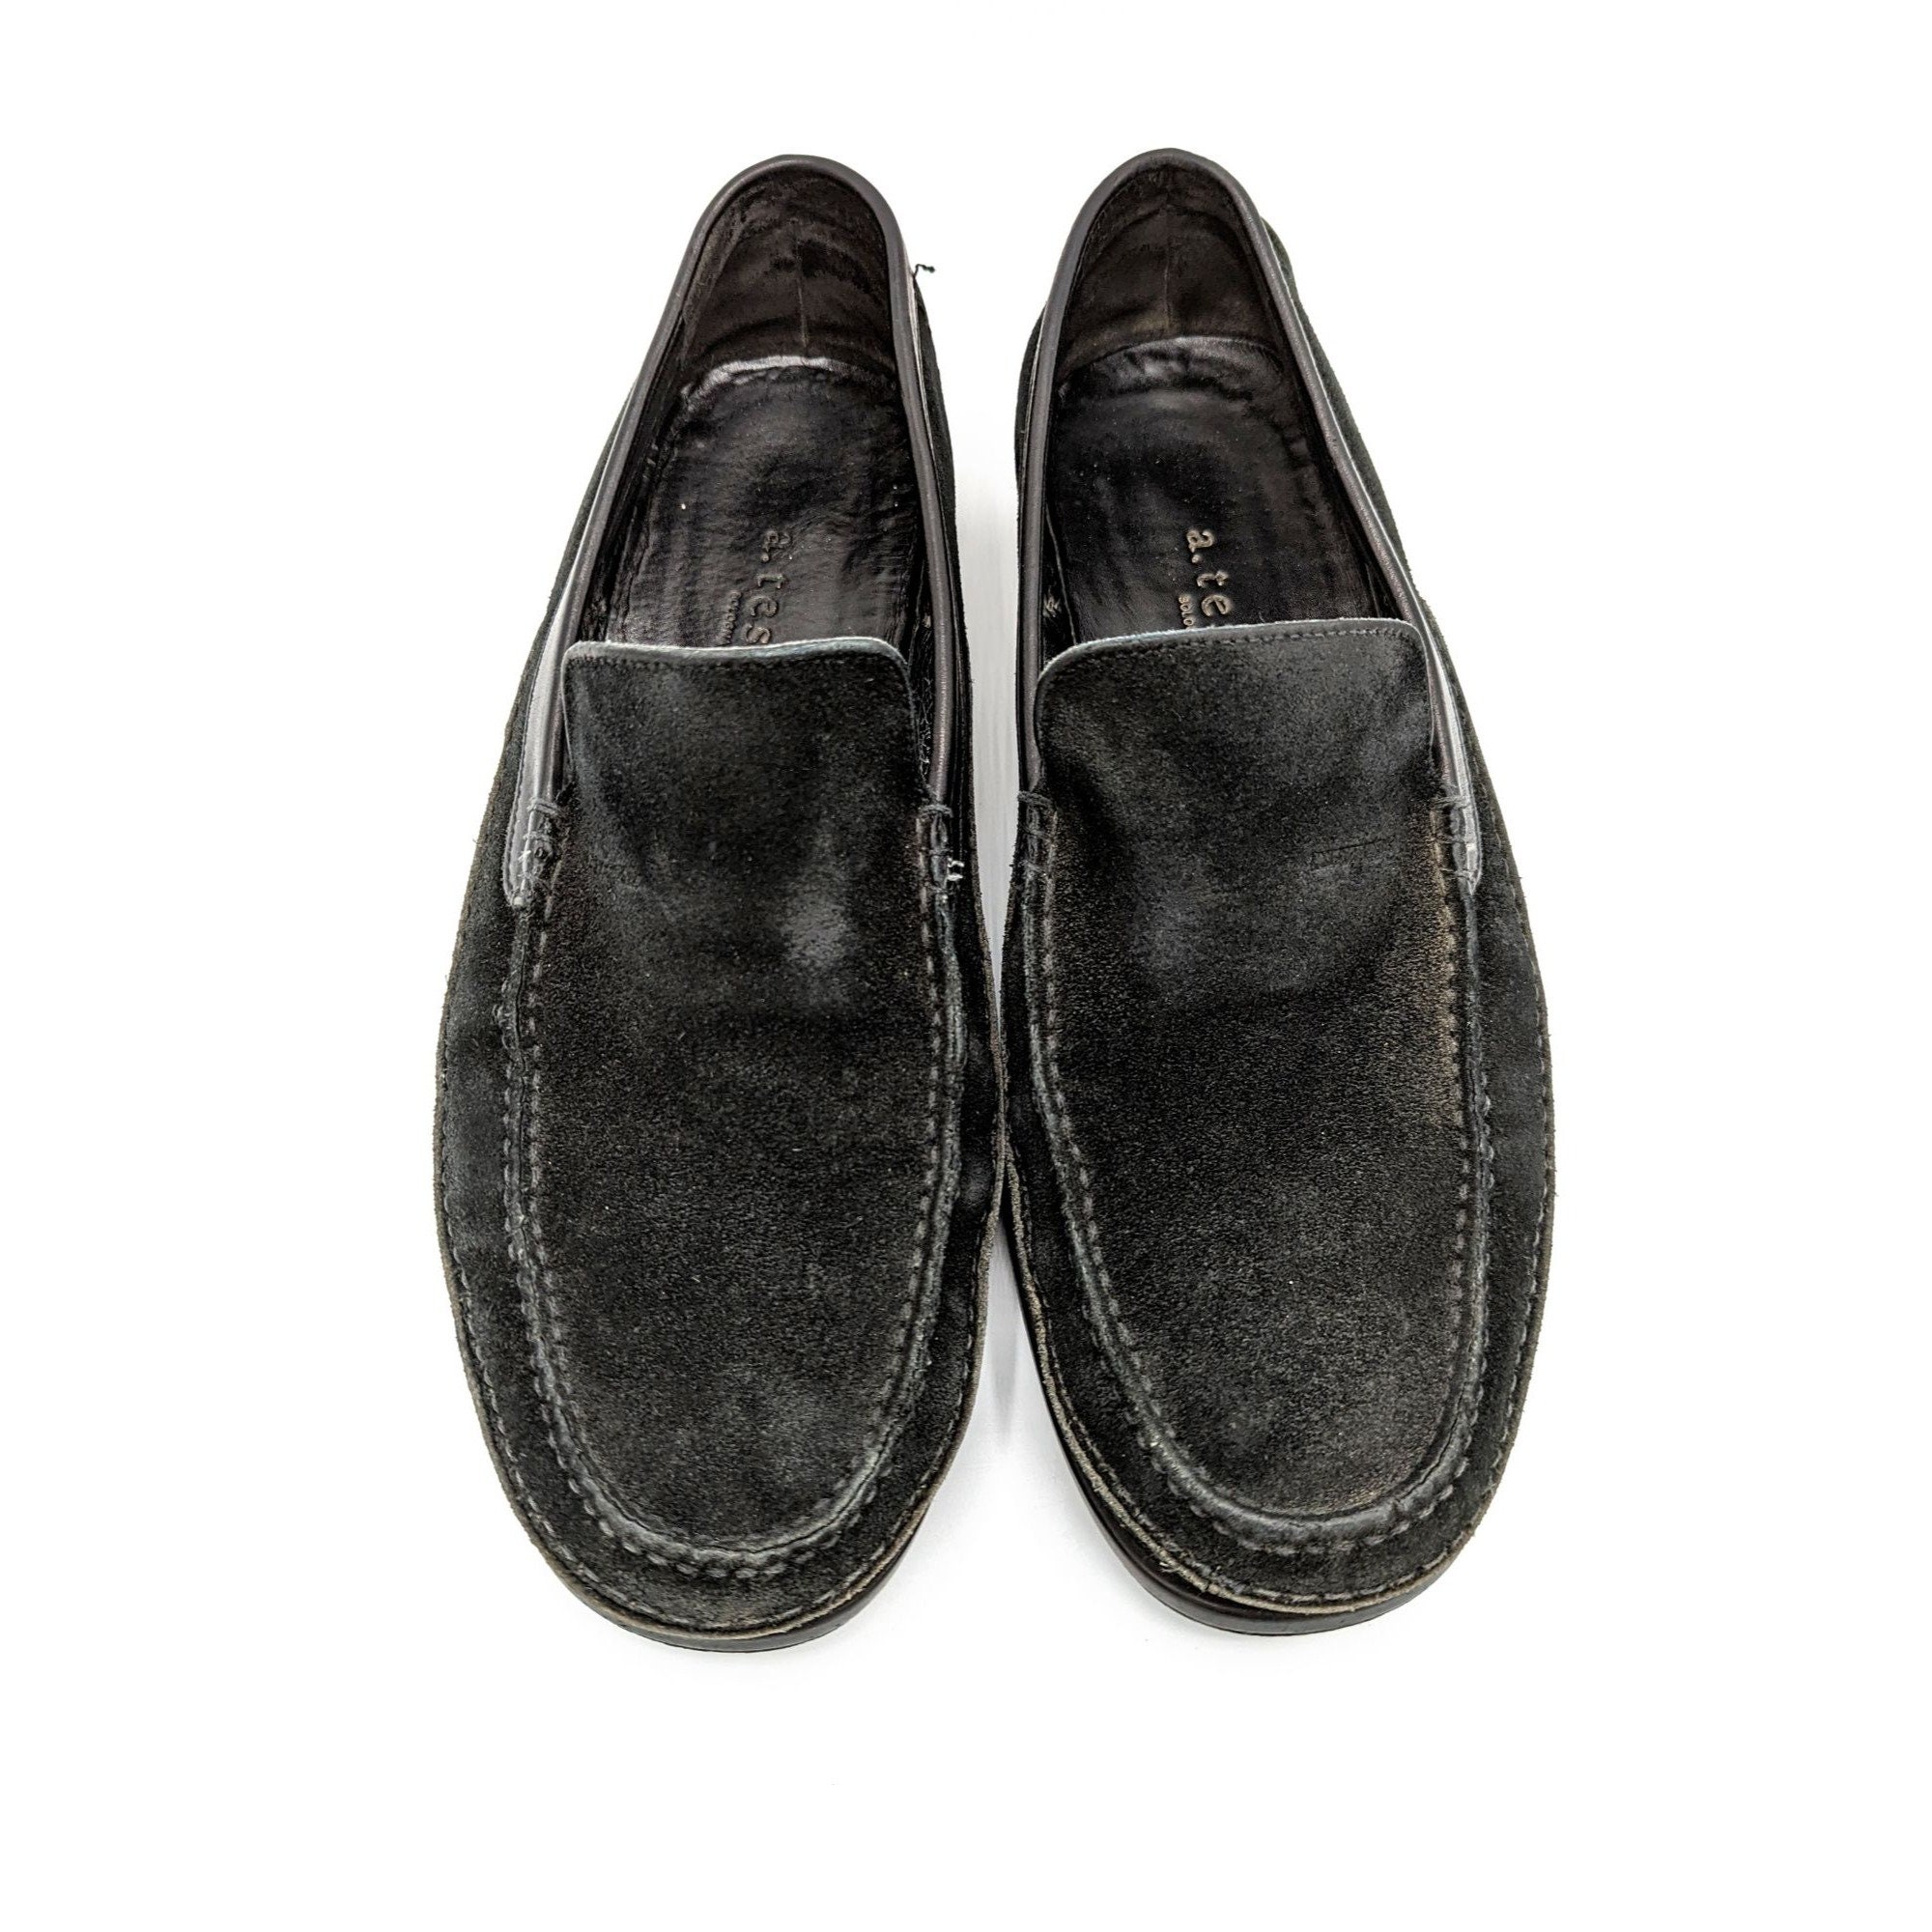 Testoni Italian Suede Slip On Loafers Heren Klassieke Schoenen Maat 9.5 M Zwart Schoenen Herenschoenen Loafers & Instappers A 